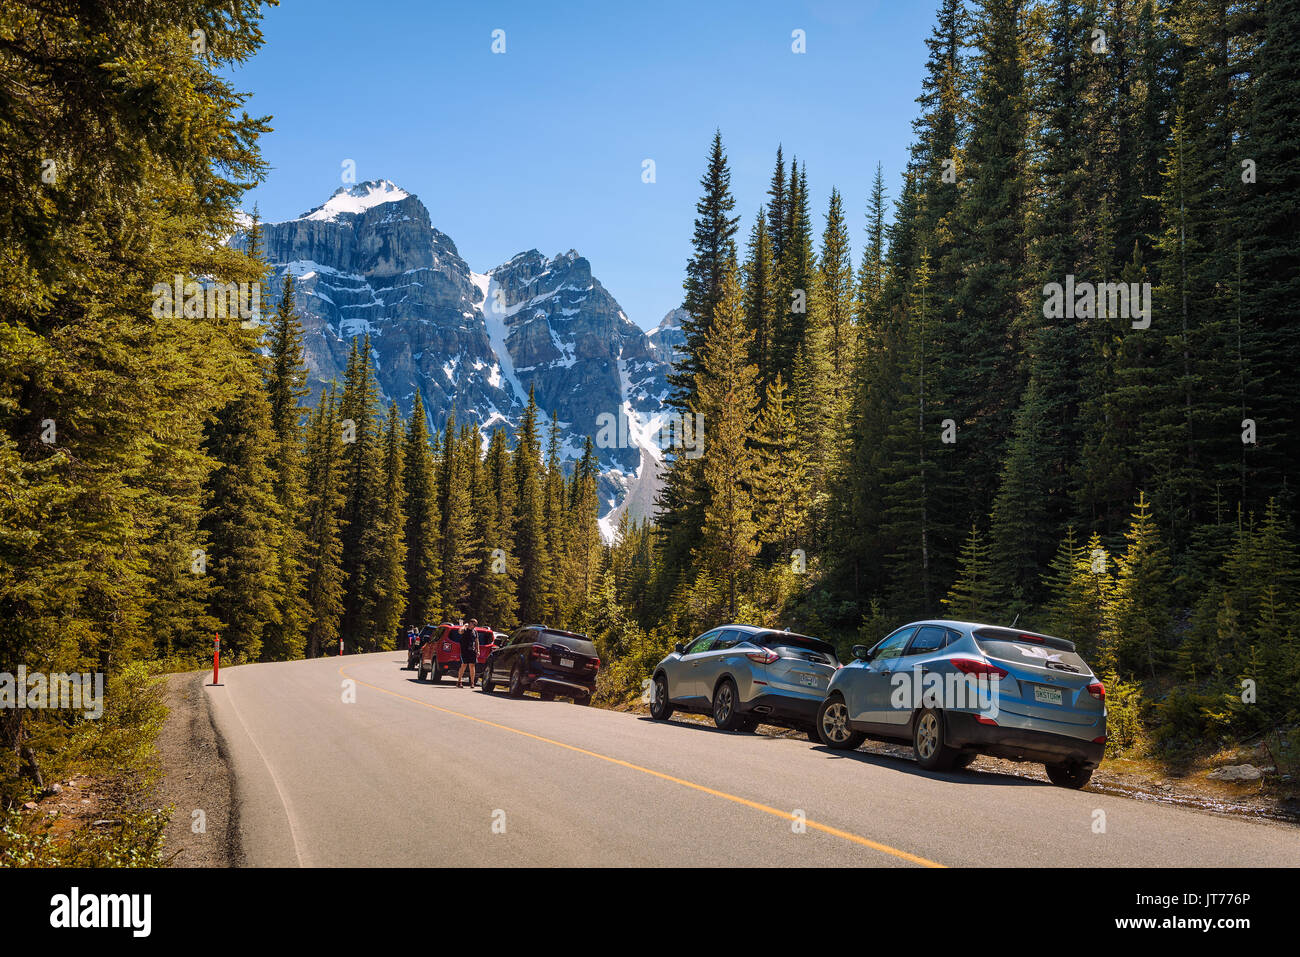 Il Moraine Lake, Alberta, Canada - 27 Giugno 2017 : parco auto lungo la strada che porta al Lago Moraine nel Parco Nazionale di Banff, Alberta, Canada, con coperte di neve pe Foto Stock